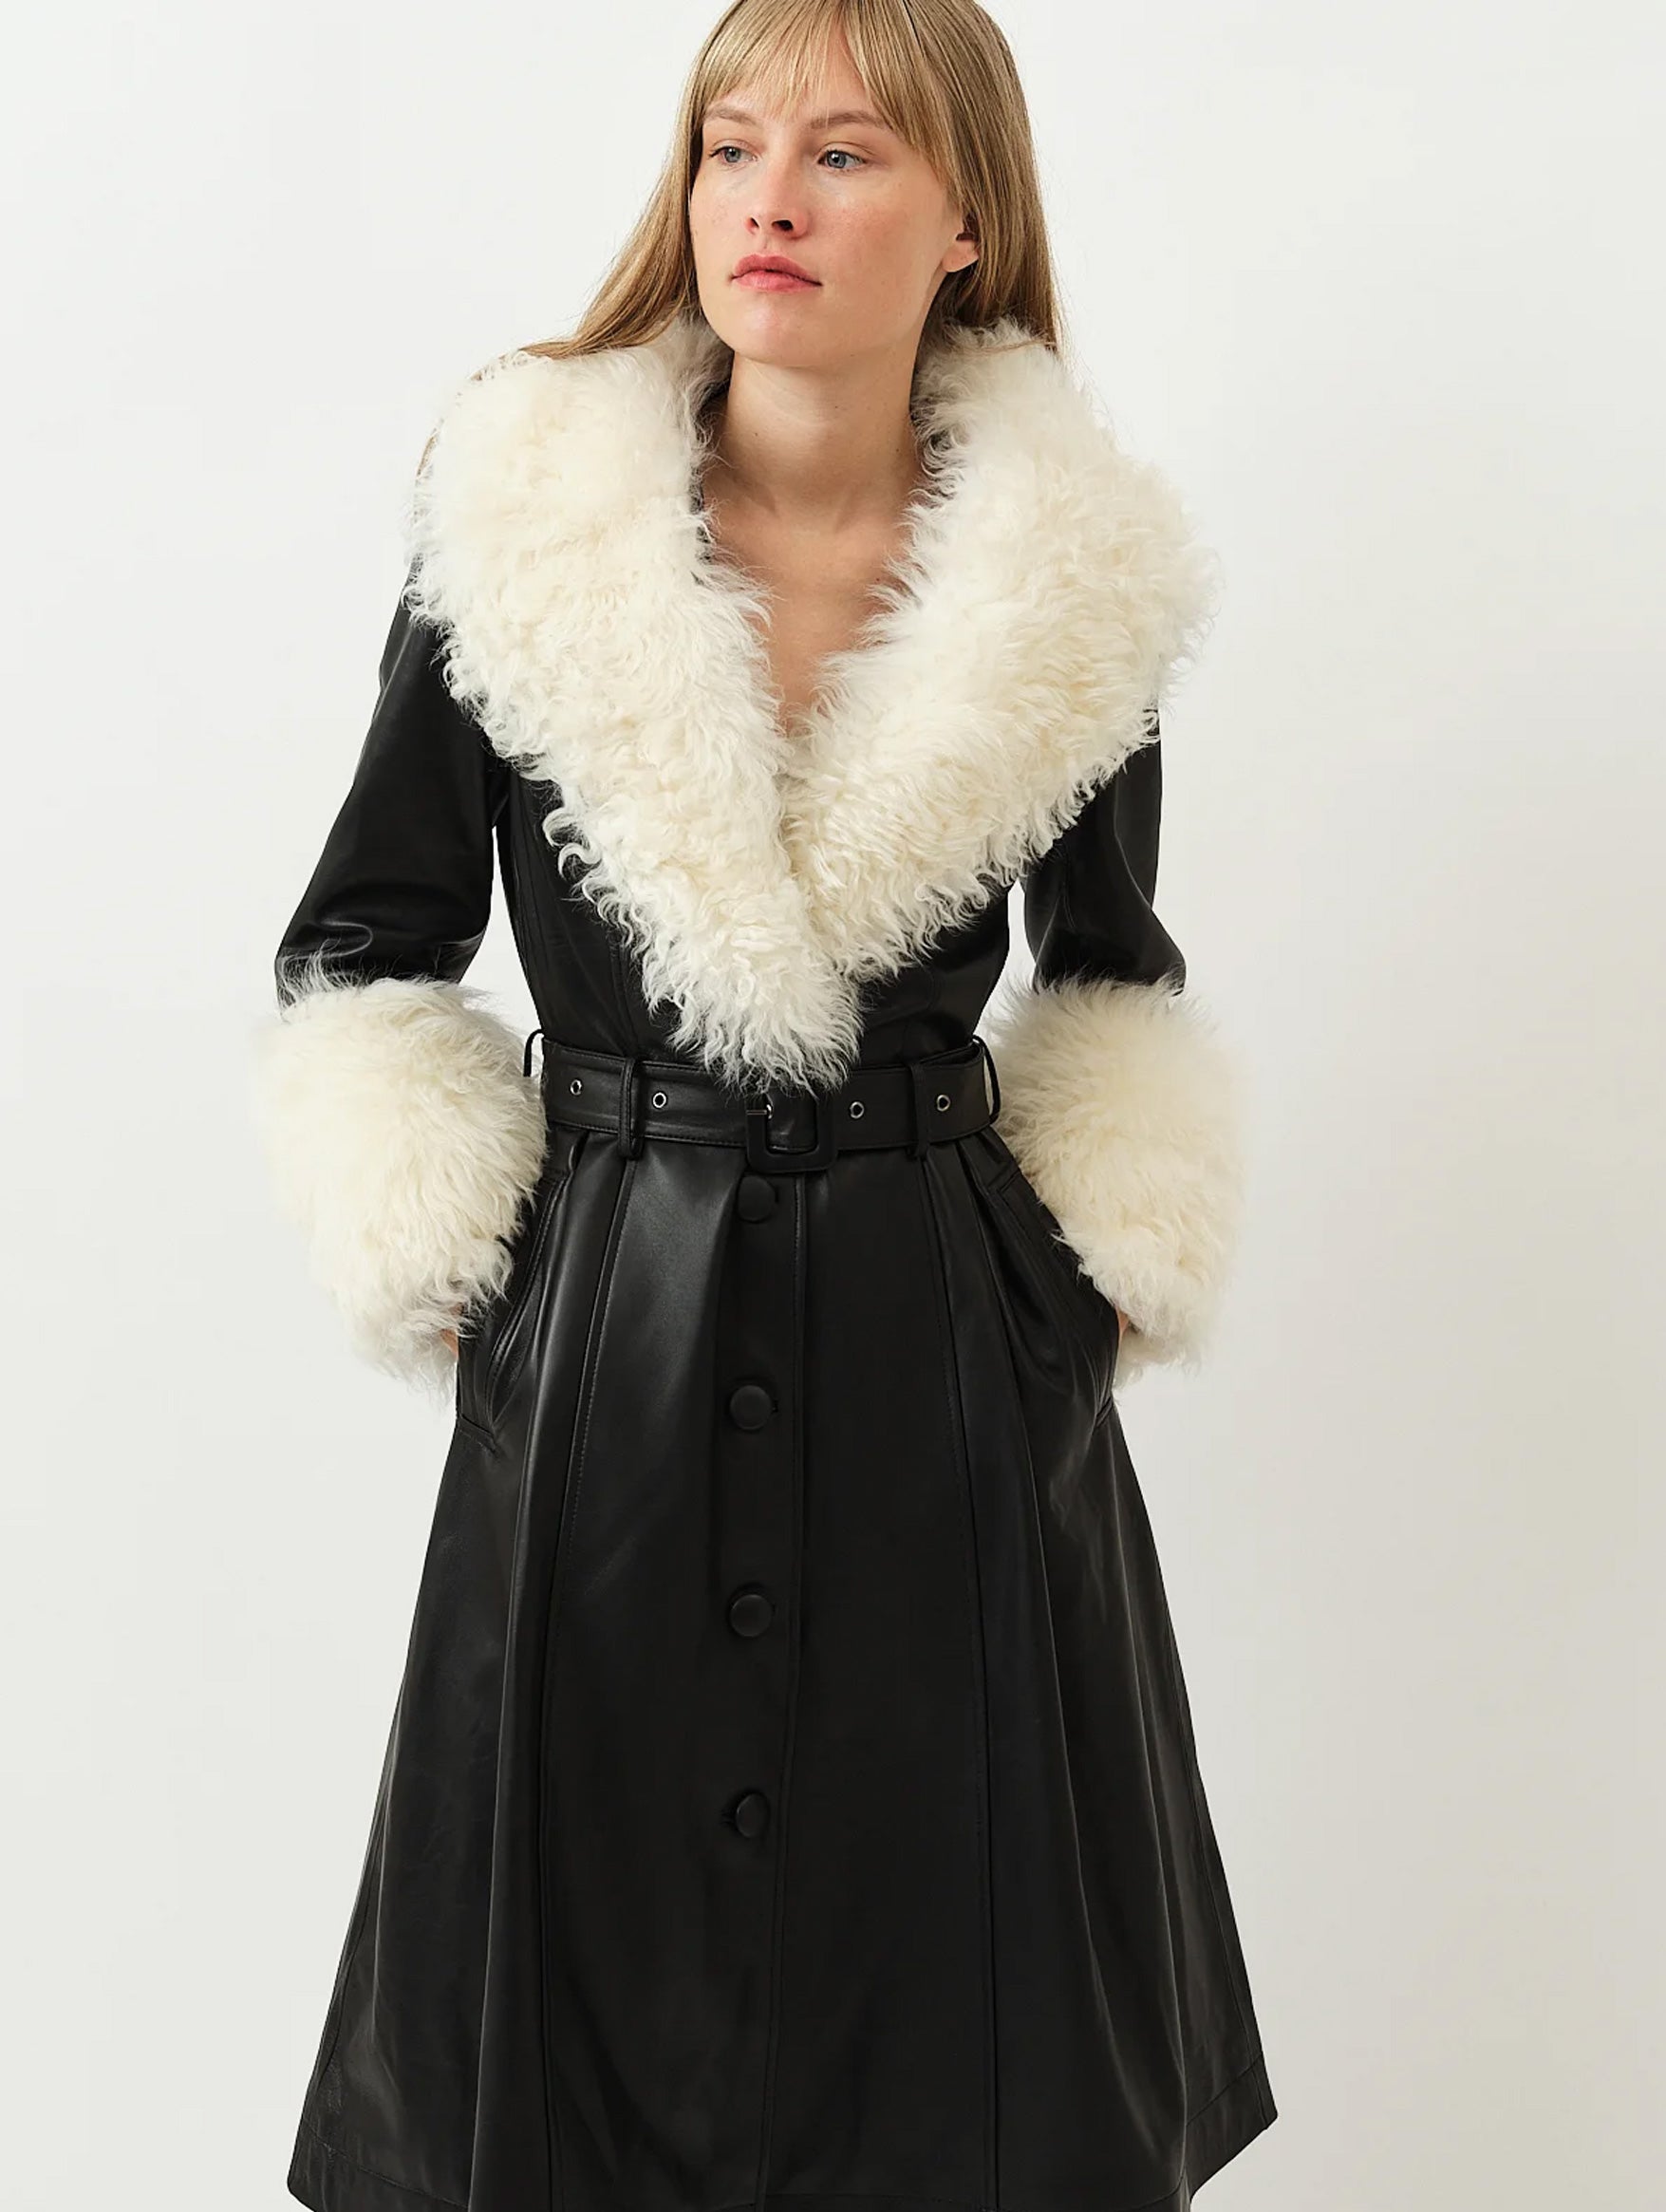 Foxy Shearling Coat in Black & Cloud